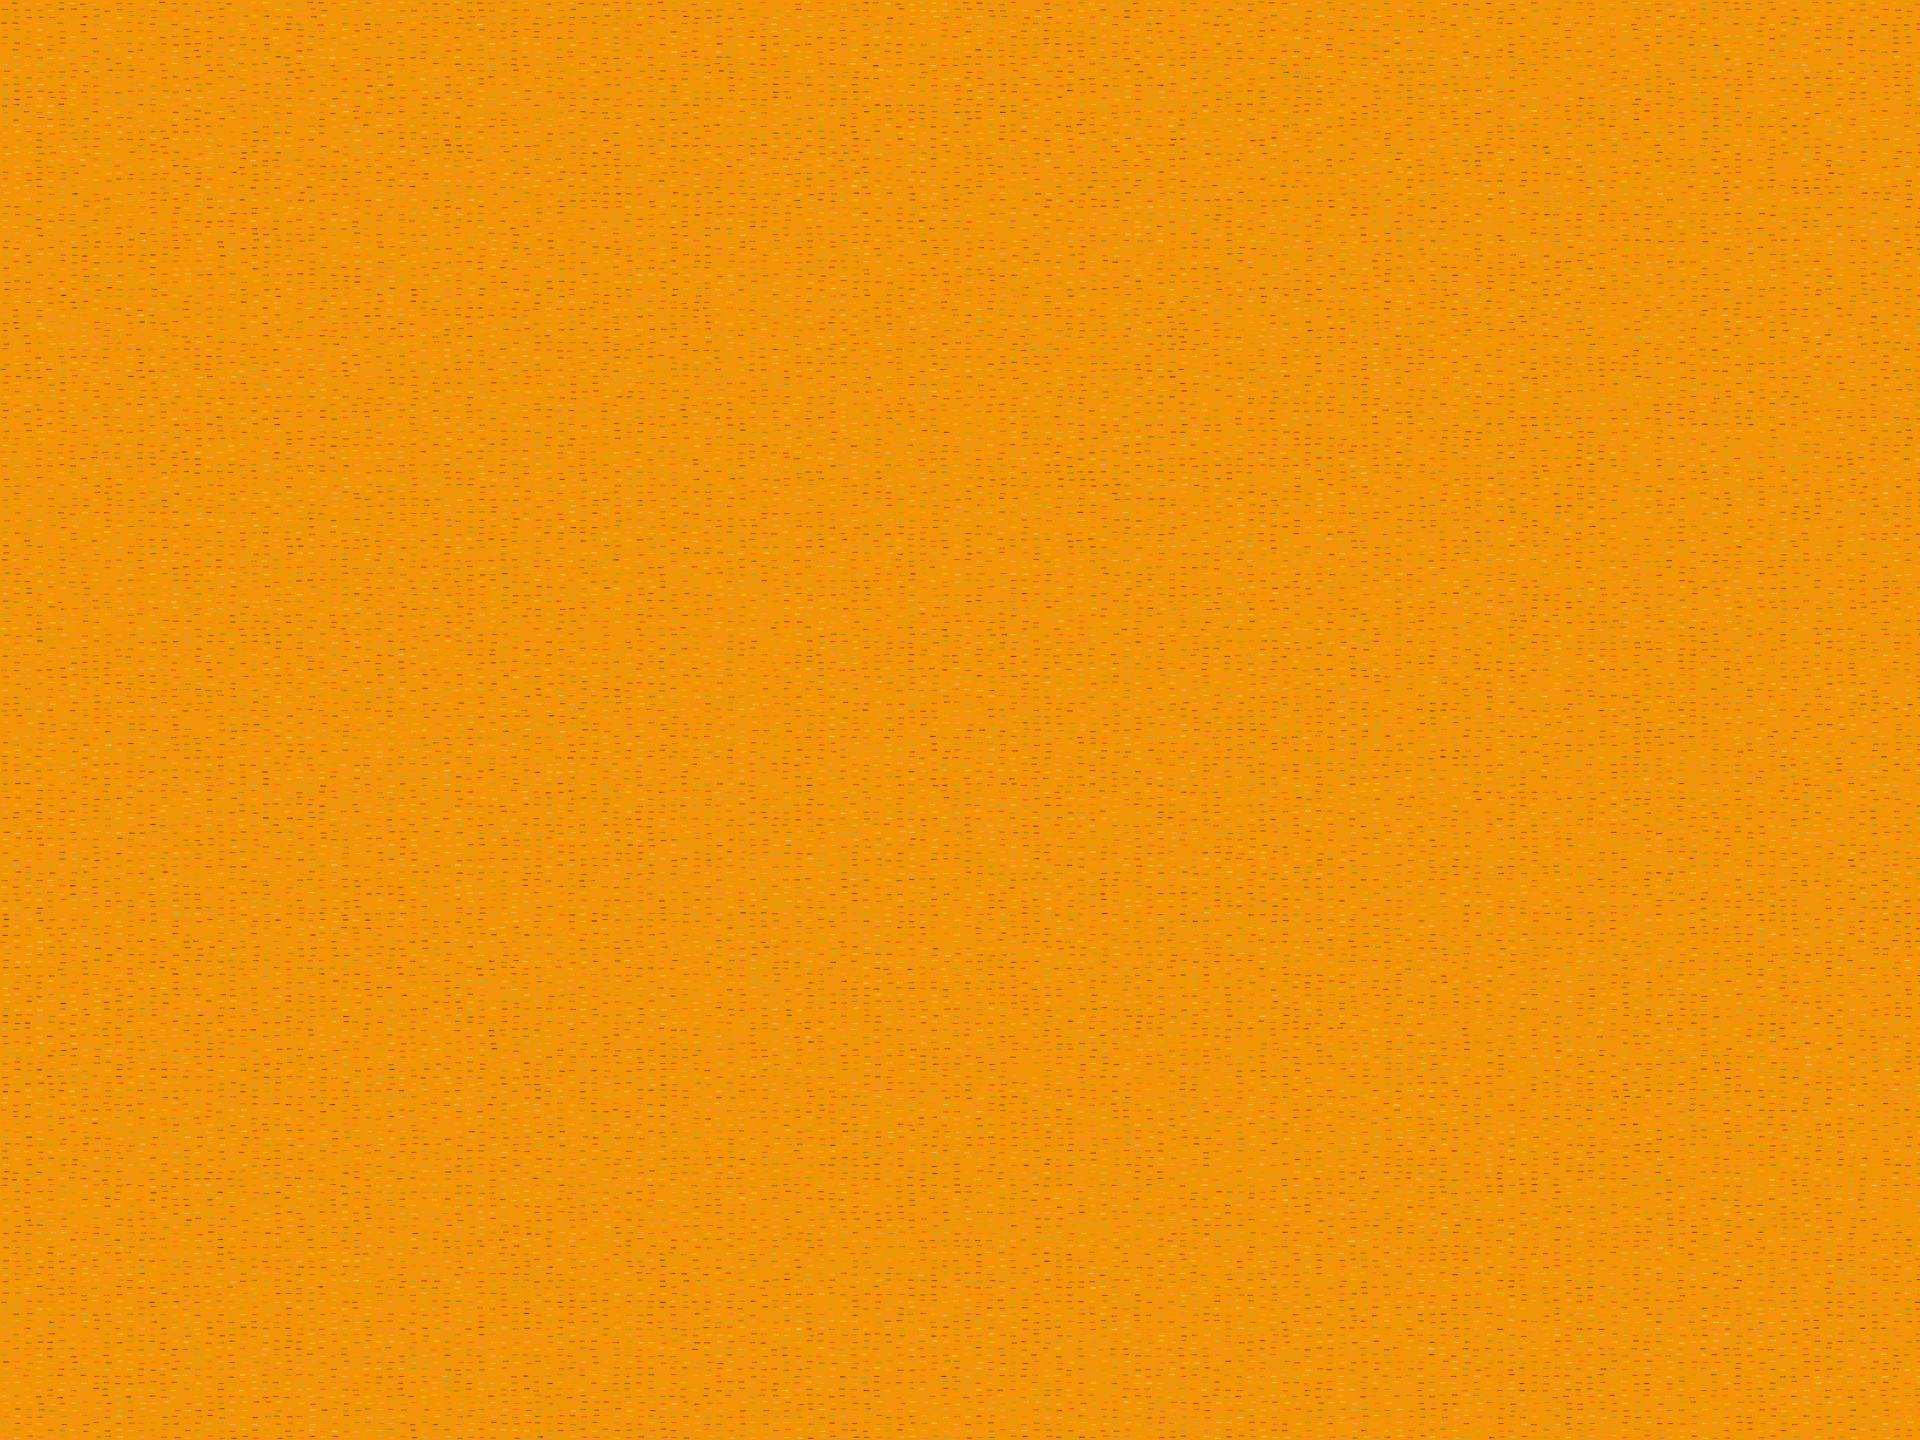 Orange Textured Background